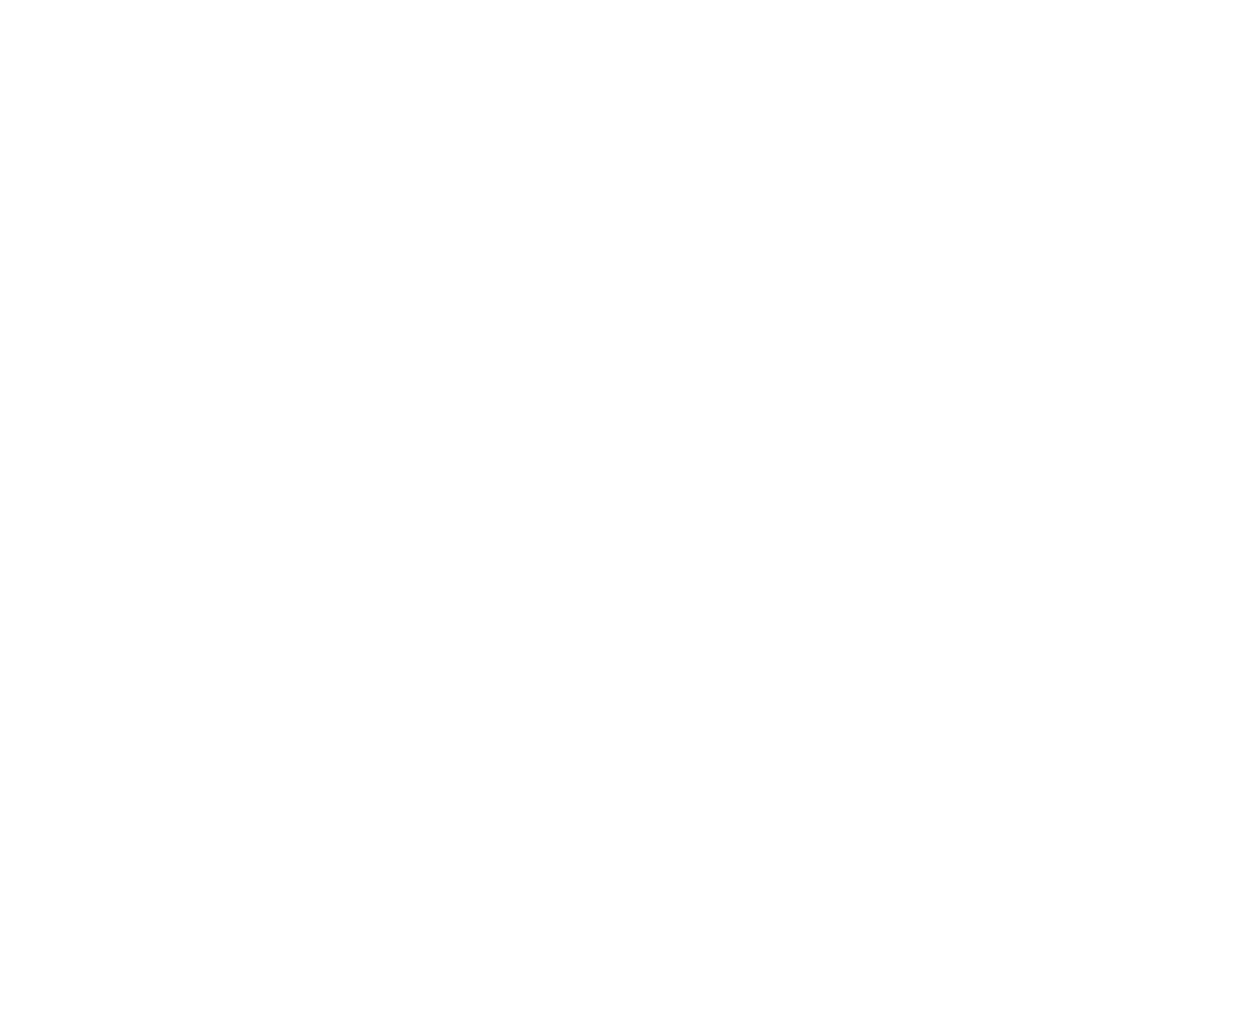 mykonosbooker from www.mykonosbooker.com